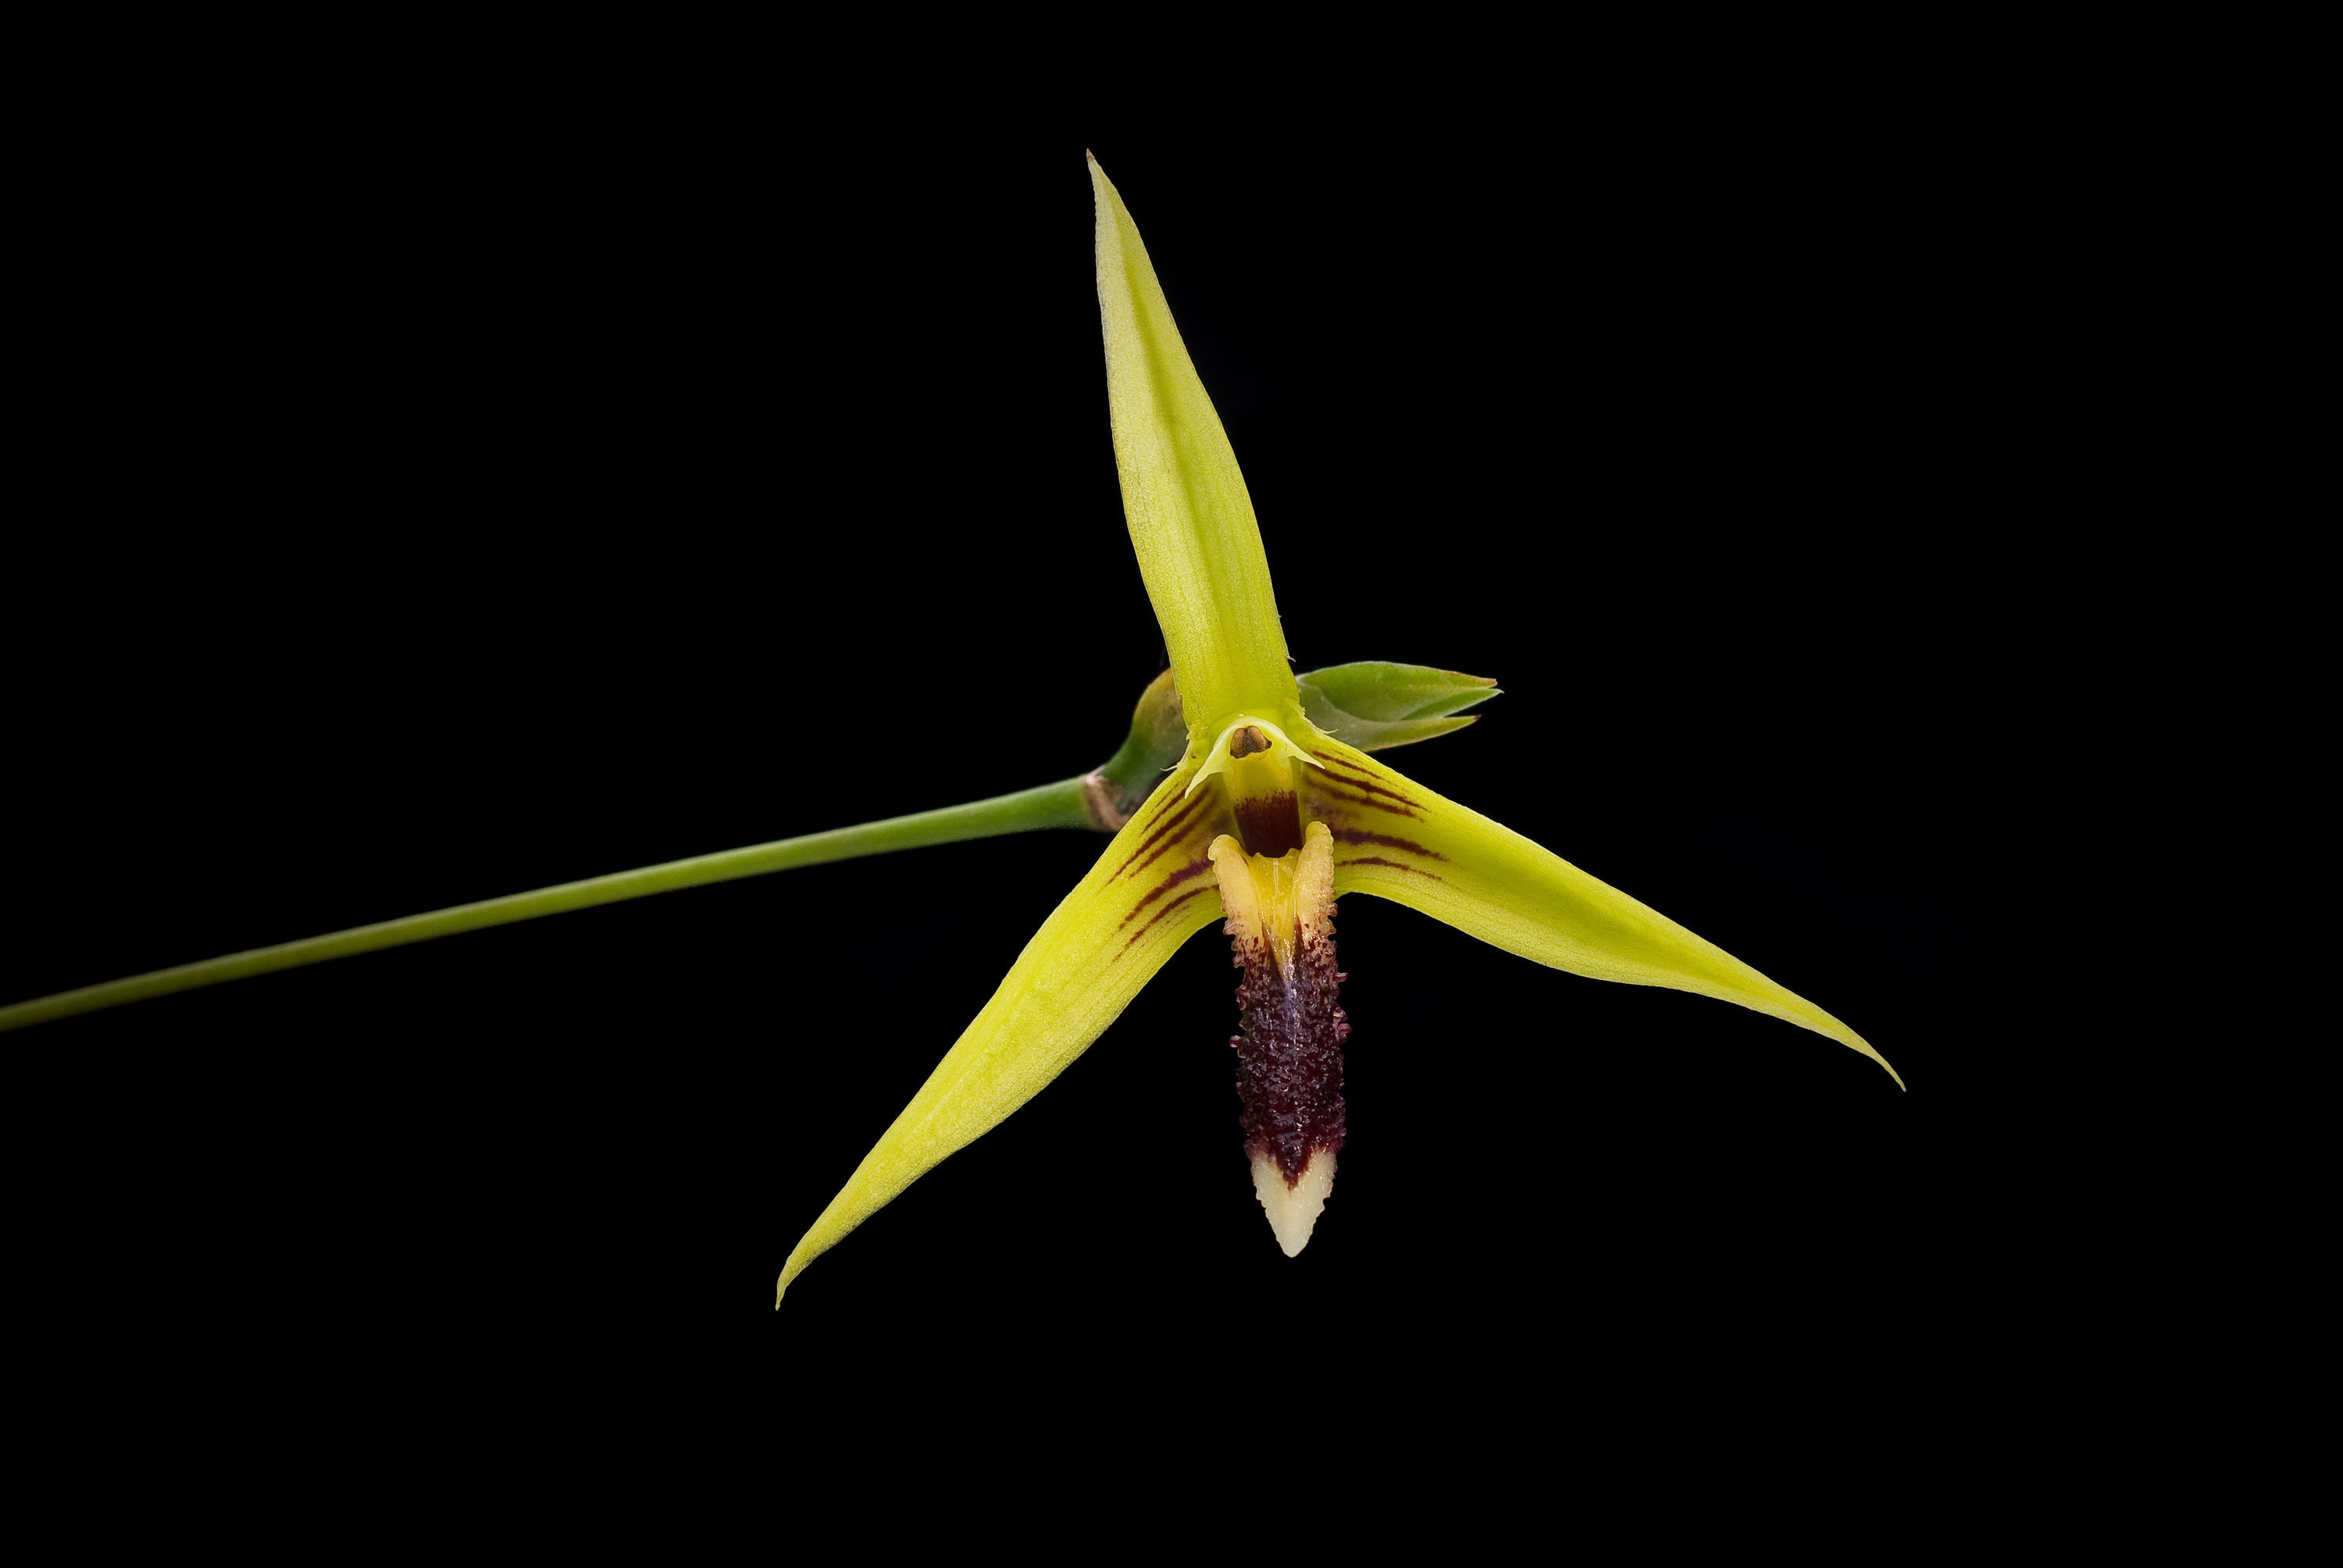 Image of Bulbophyllum septemtrionale (J. J. Sm.) J. J. Sm.